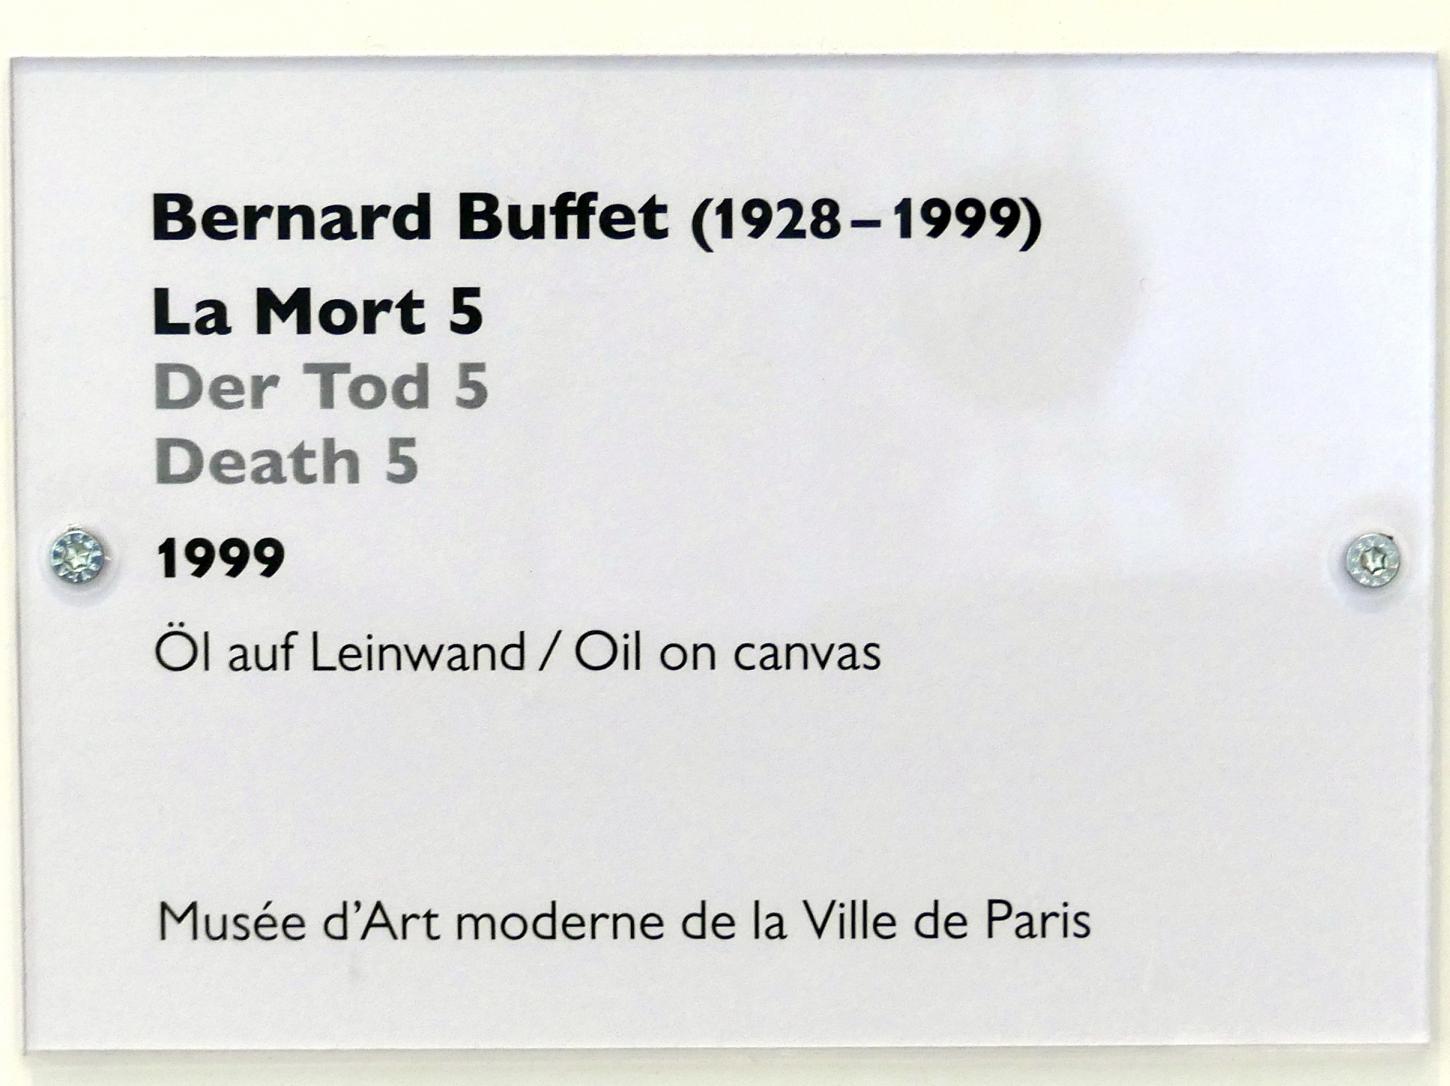 Bernard Buffet (1948–1999), Der Tod 5, Schwäbisch Hall, Kunsthalle Würth, Ausstellung "Das Musée d'Art moderne de la Ville de Paris zu Gast in der Kunsthalle Würth" vom 15.04.-15.09.2019, 1999, Bild 2/2